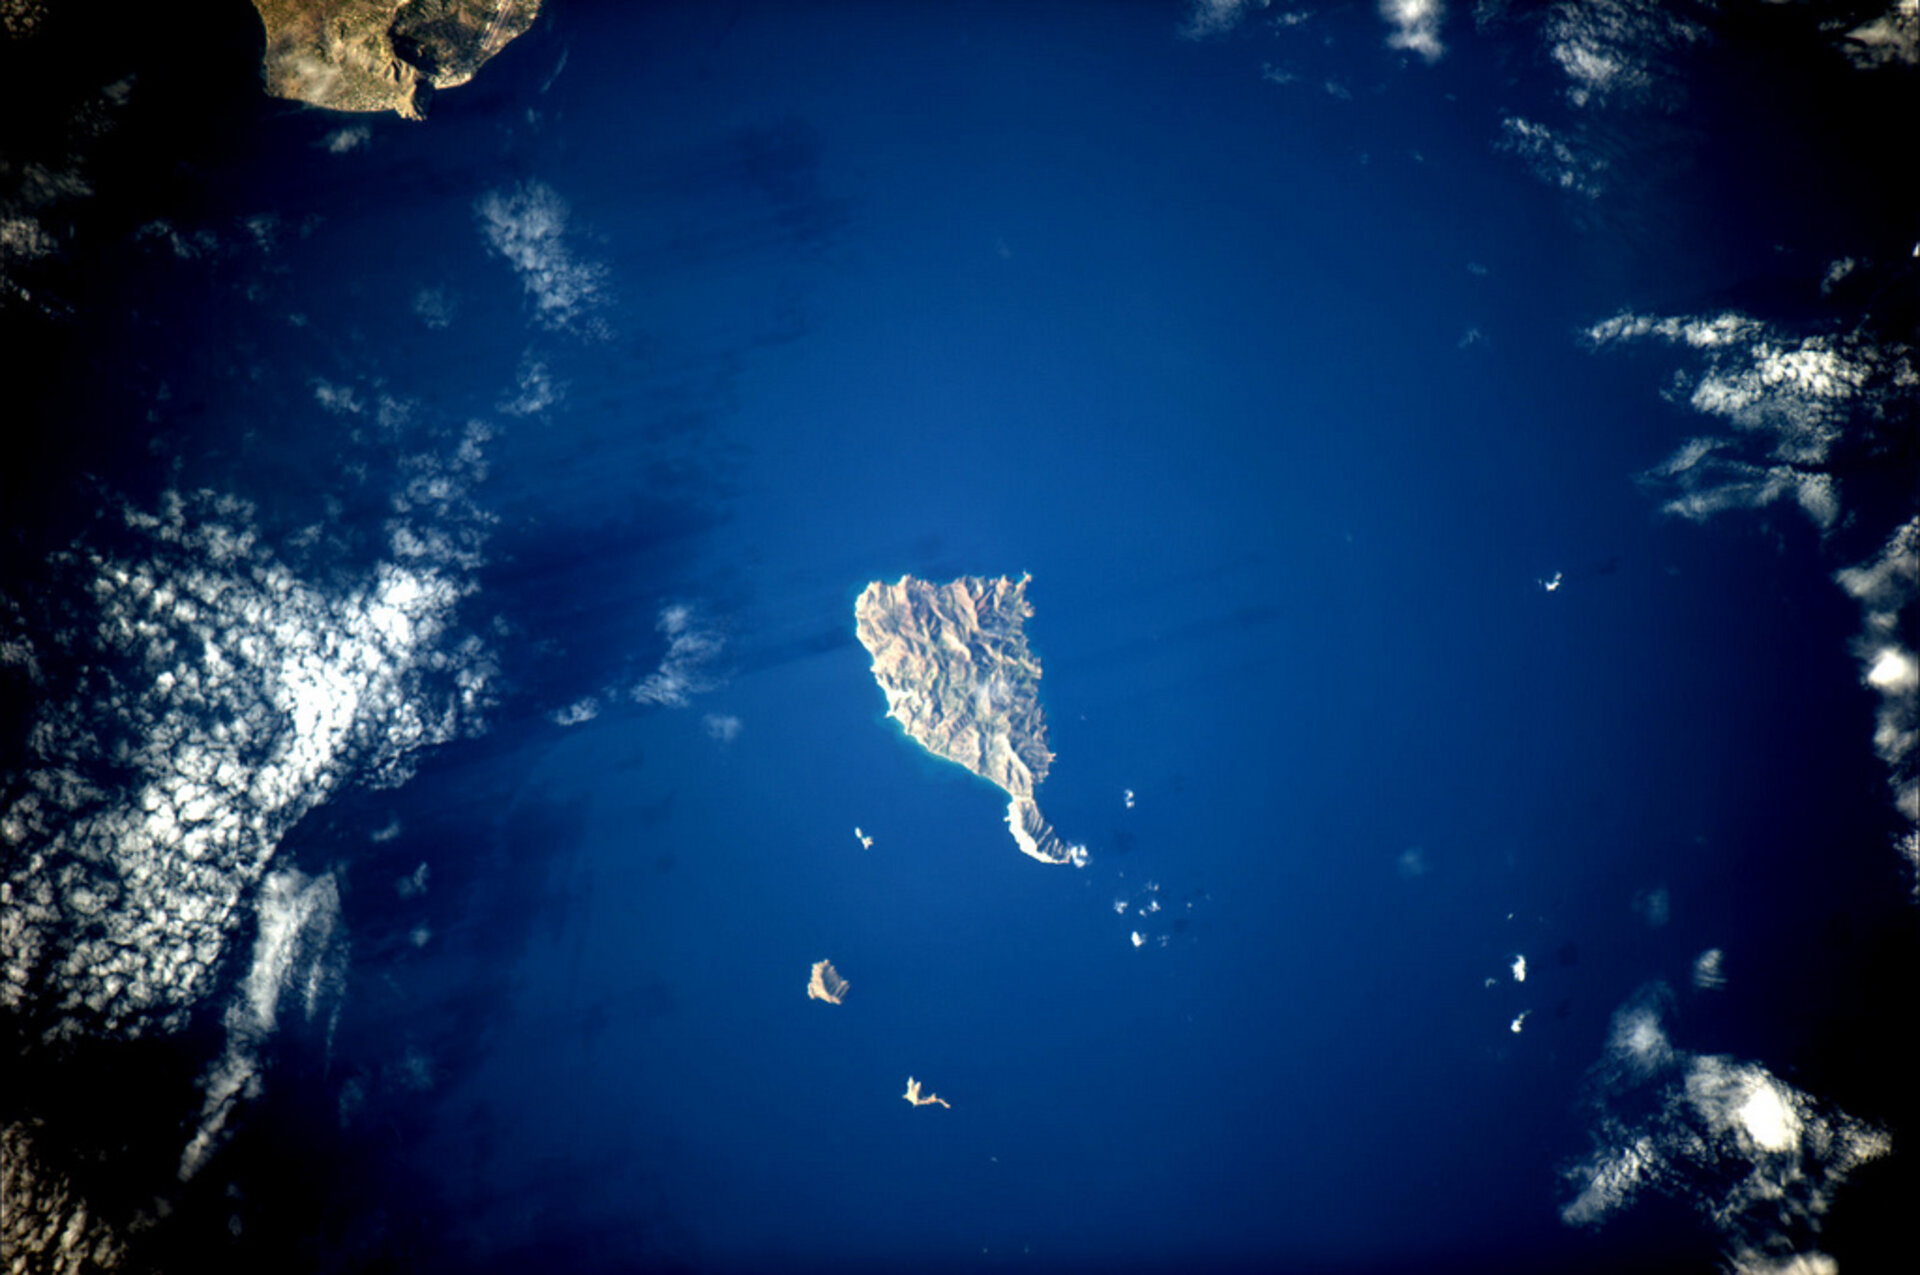 Η Ανάφη, ένα πετράδι σπαρμένο στο αρχιπέλαγος του Αιγαίου